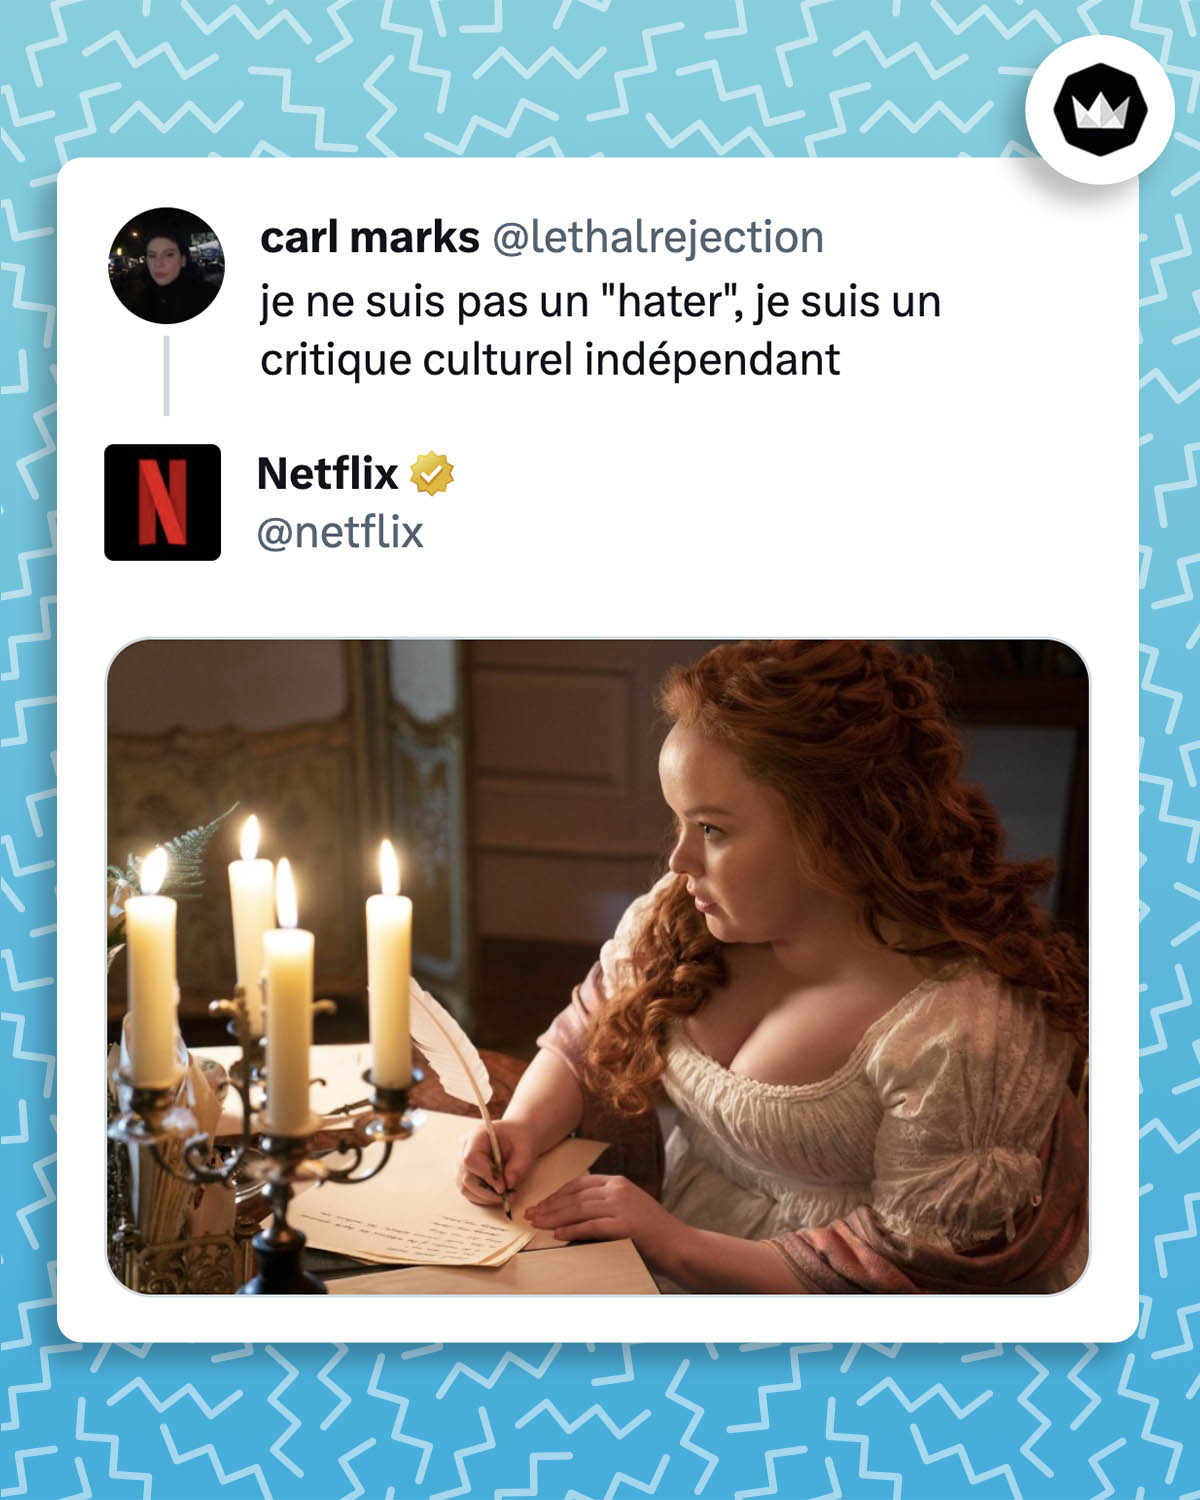 Internaute : "Je ne suis pas un "hater" je suis un critique culturel indépendant"
Netflix répond avec une photo de Penelope Featherington, personnage de la saga "La Chronique des Bridgerton".